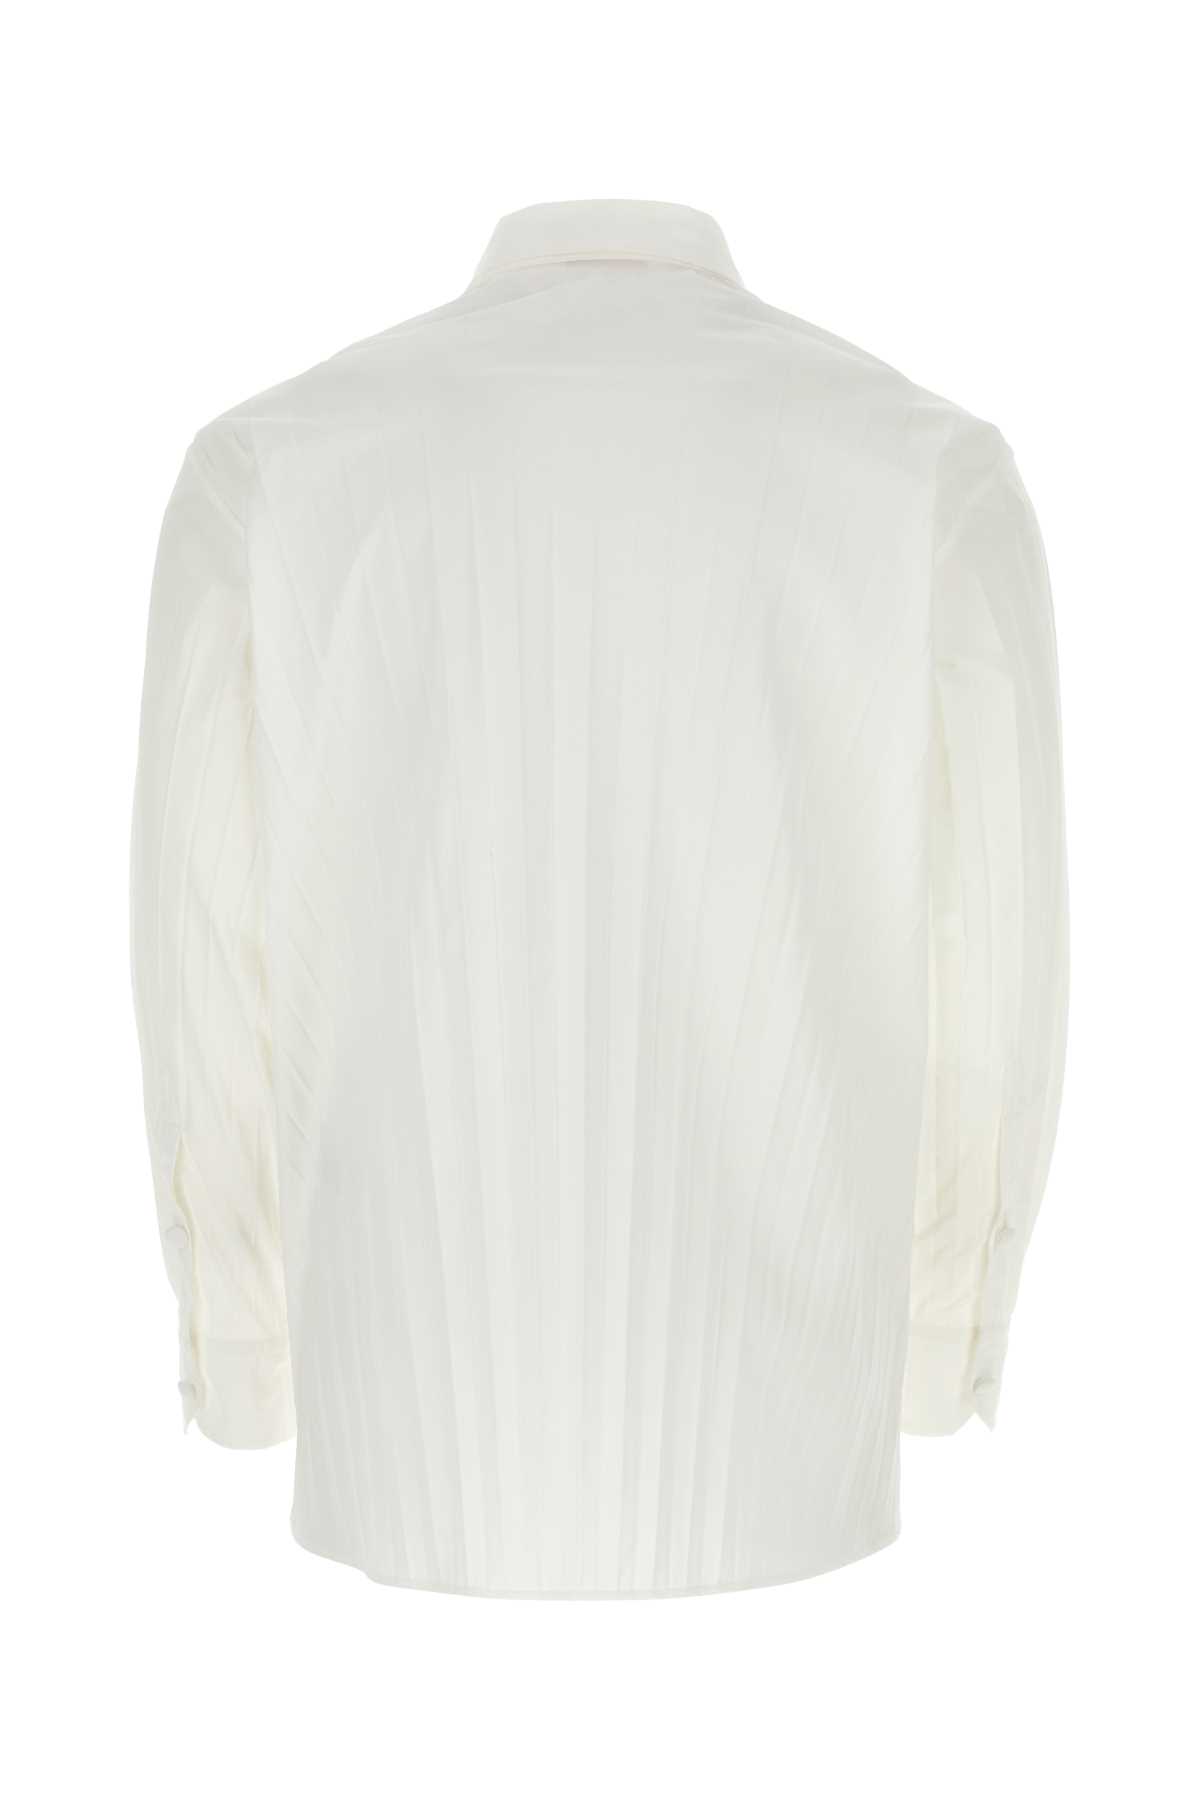 Valentino White Tech Nylon Oversize Shirt